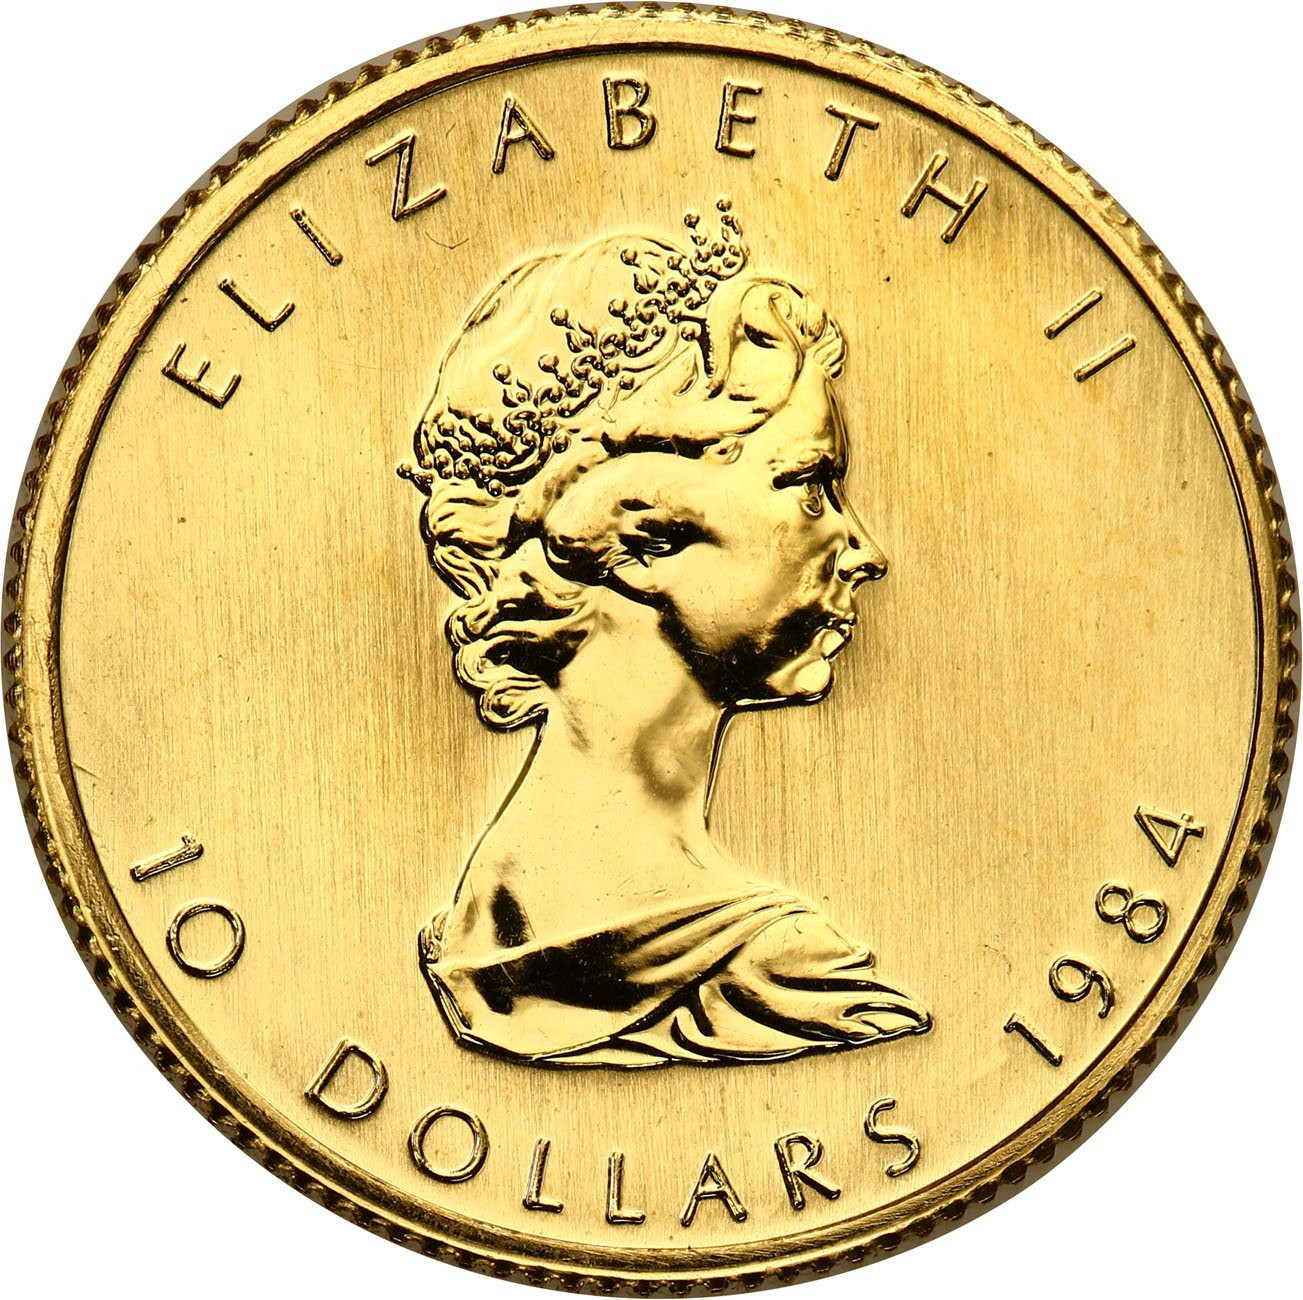 Kanada. 5 dolarów 2011 liść klonowy - 1/10 uncji złota